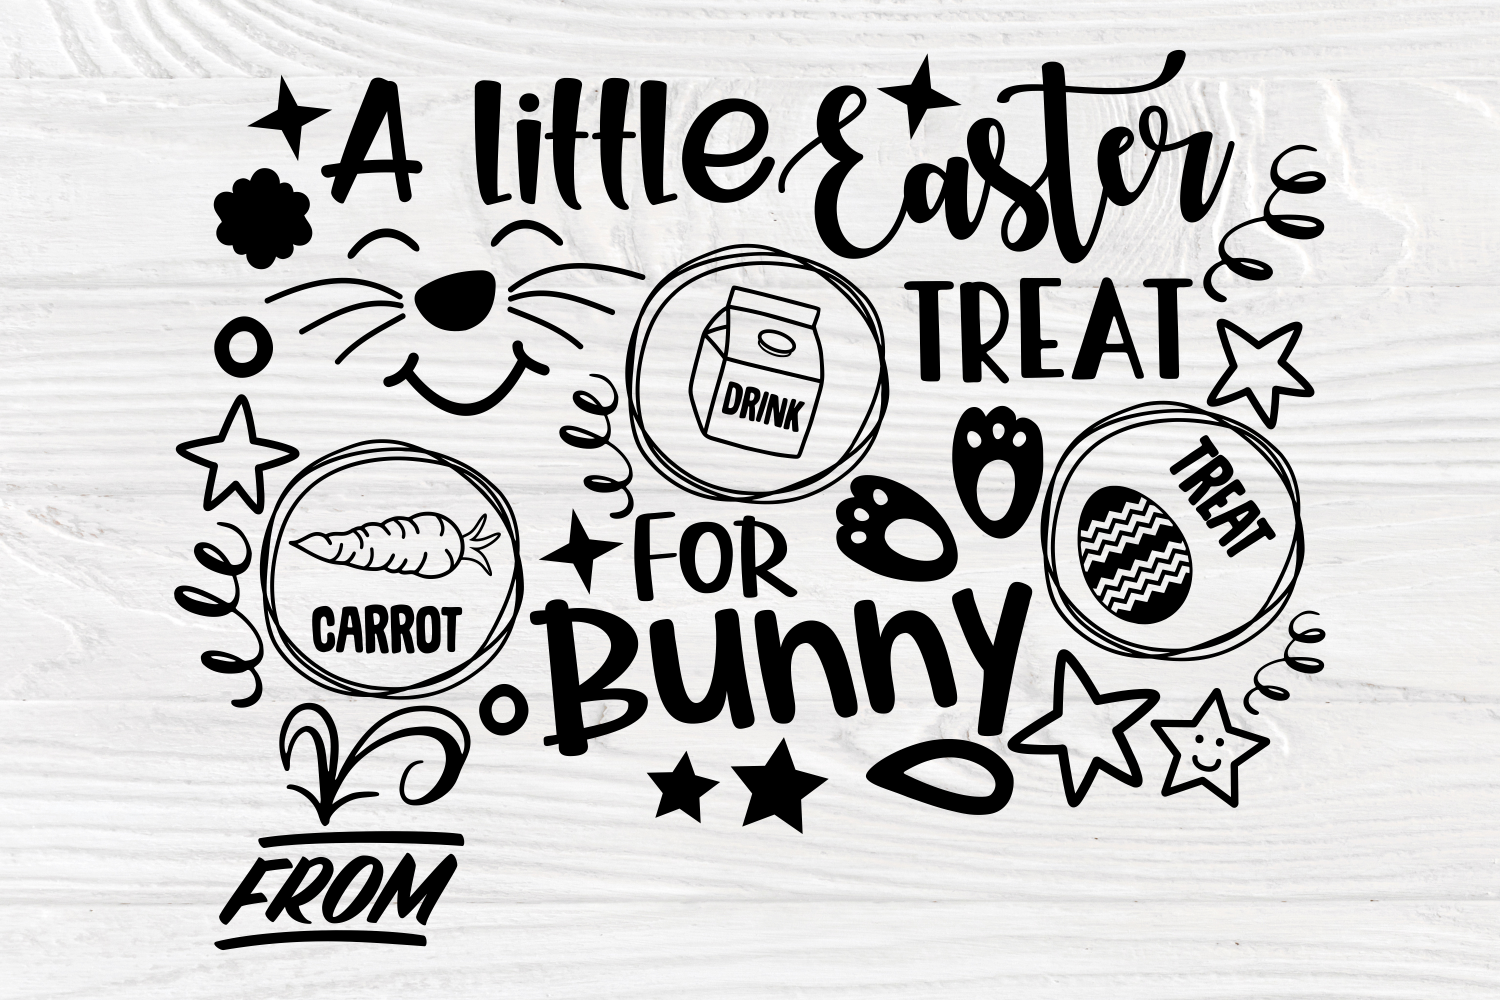 Easter Tray SVG Bundle, Dear Easter Bunny Svg By TonisArtStudio